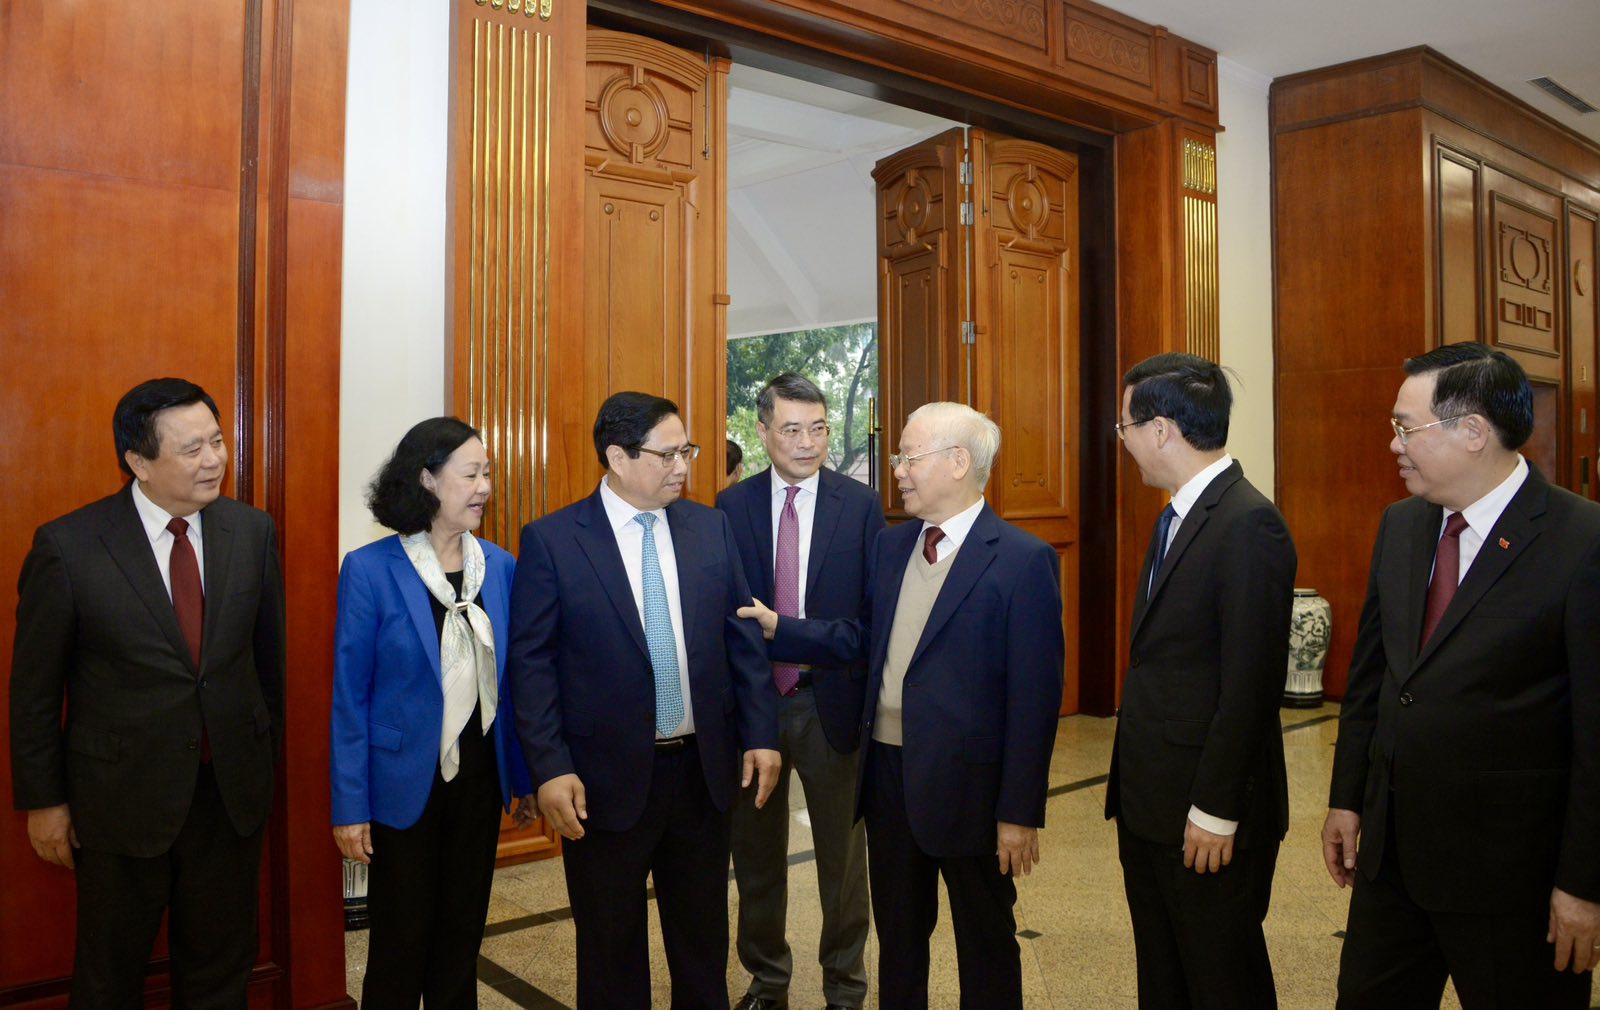 Tổng Bí thư Nguyễn Phú Trọng cùng các đồng chí lãnh đạo Đảng, Nhà nước tham dự Phiên họp - Ảnh: VOV